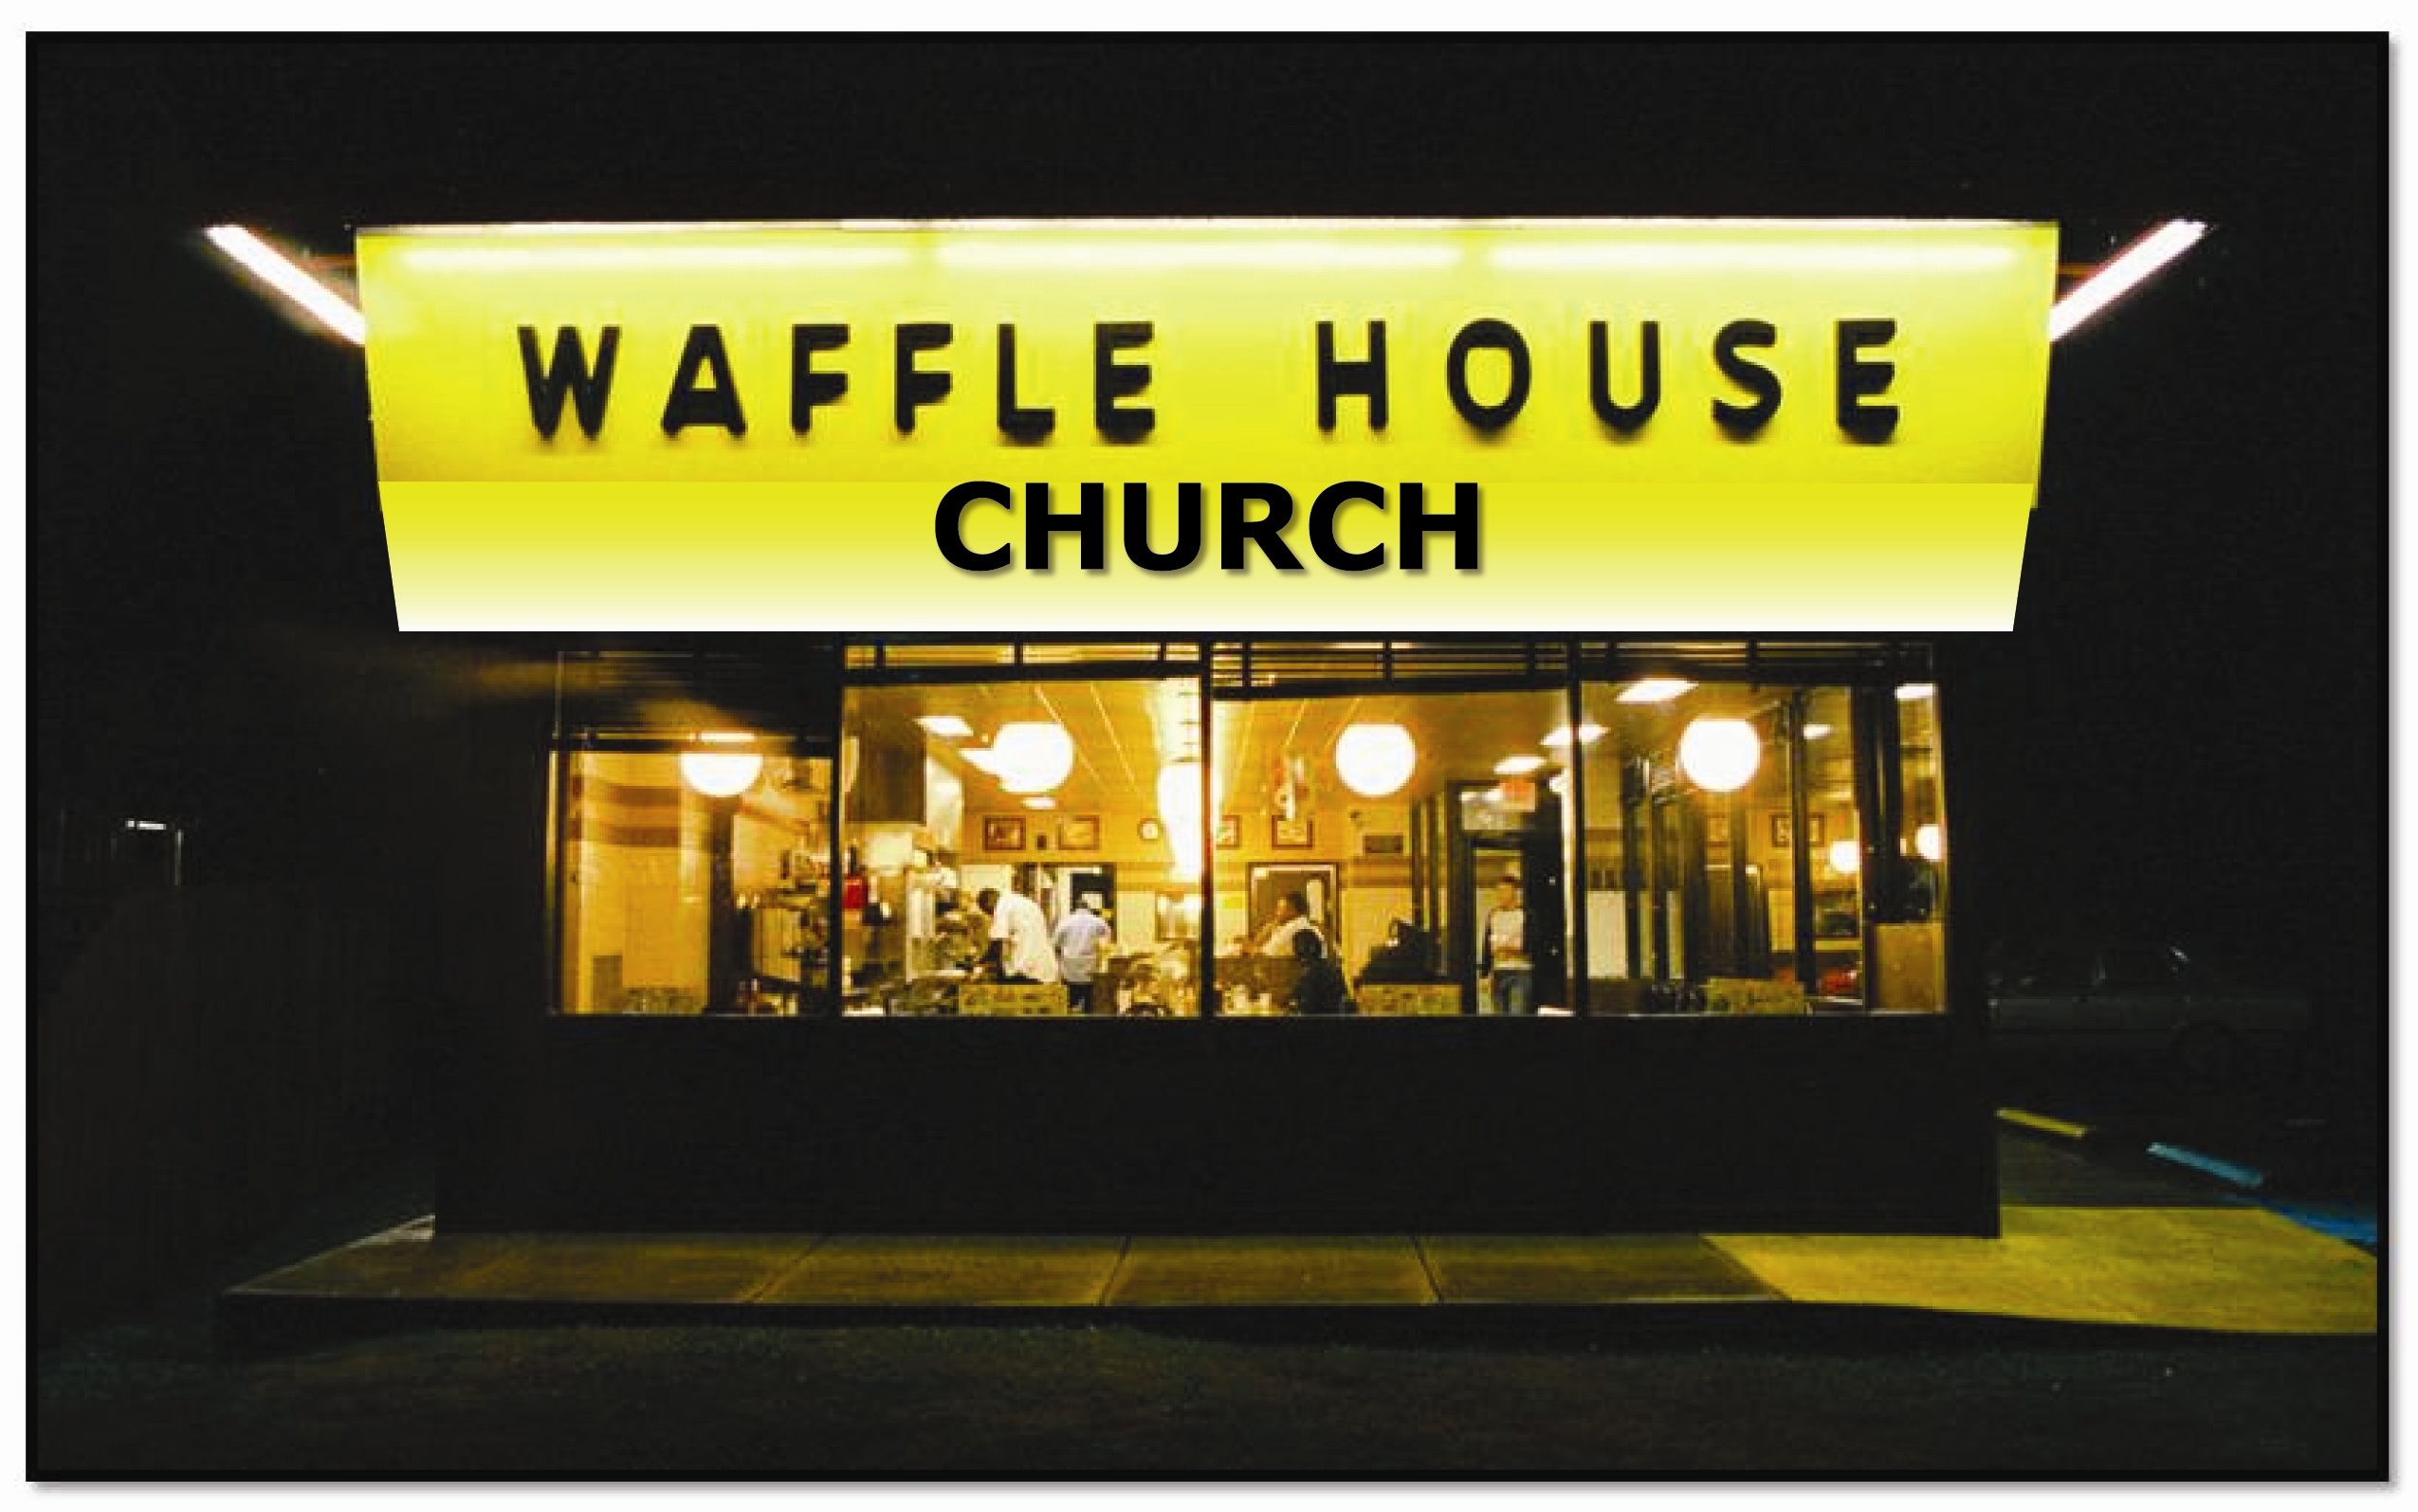 waffle-house-church.jpg